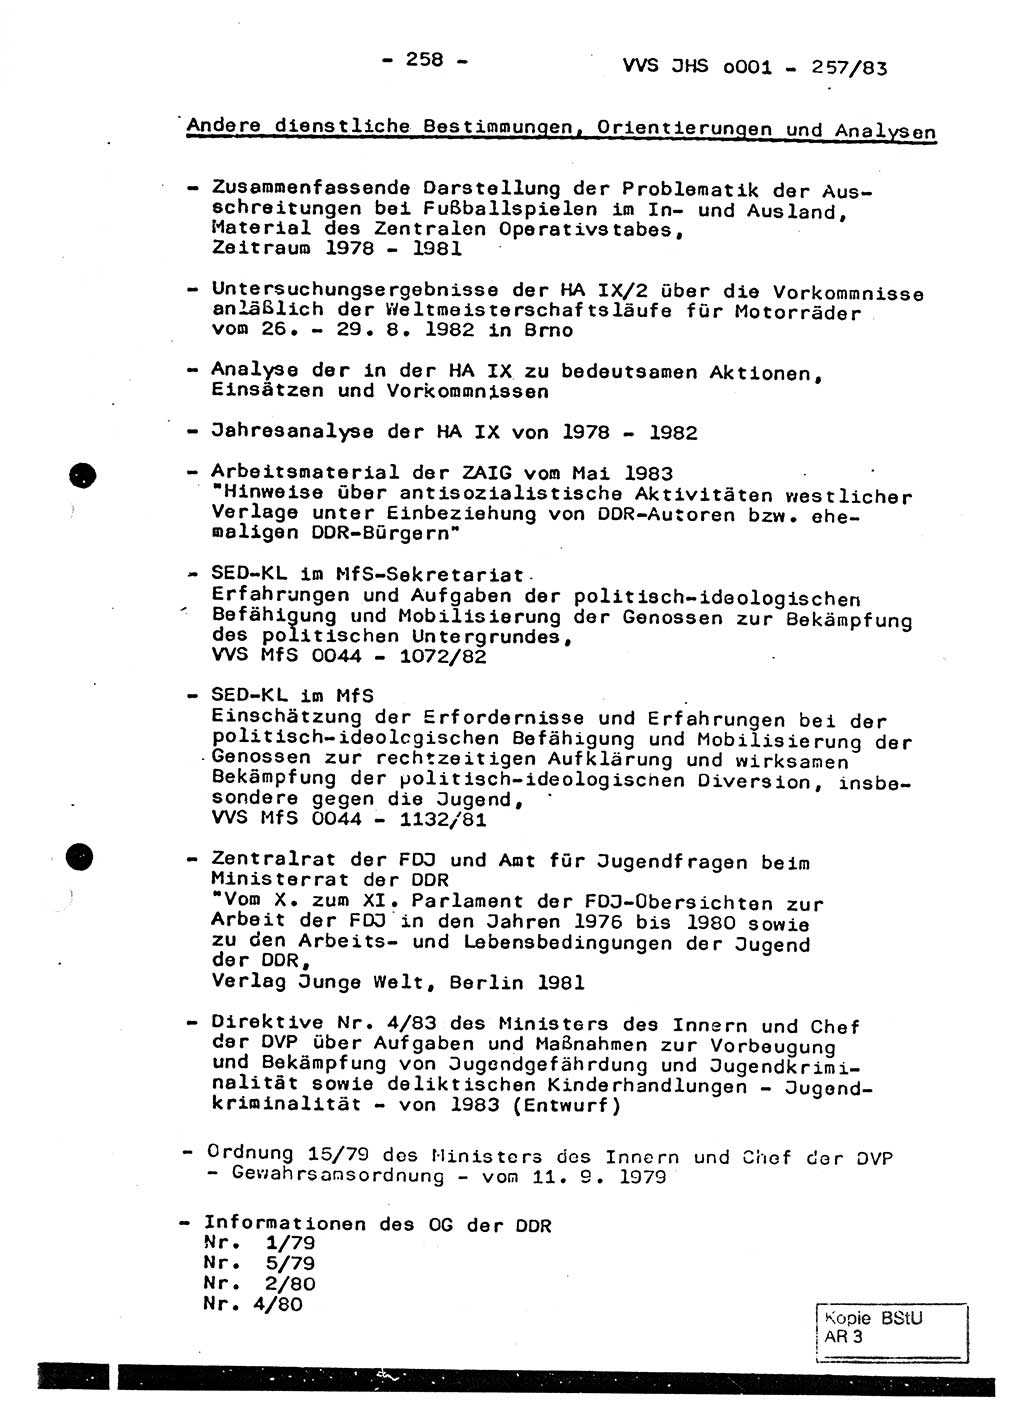 Dissertation, Oberst Helmut Lubas (BV Mdg.), Oberstleutnant Manfred Eschberger (HA IX), Oberleutnant Hans-Jürgen Ludwig (JHS), Ministerium für Staatssicherheit (MfS) [Deutsche Demokratische Republik (DDR)], Juristische Hochschule (JHS), Vertrauliche Verschlußsache (VVS) o001-257/83, Potsdam 1983, Seite 258 (Diss. MfS DDR JHS VVS o001-257/83 1983, S. 258)